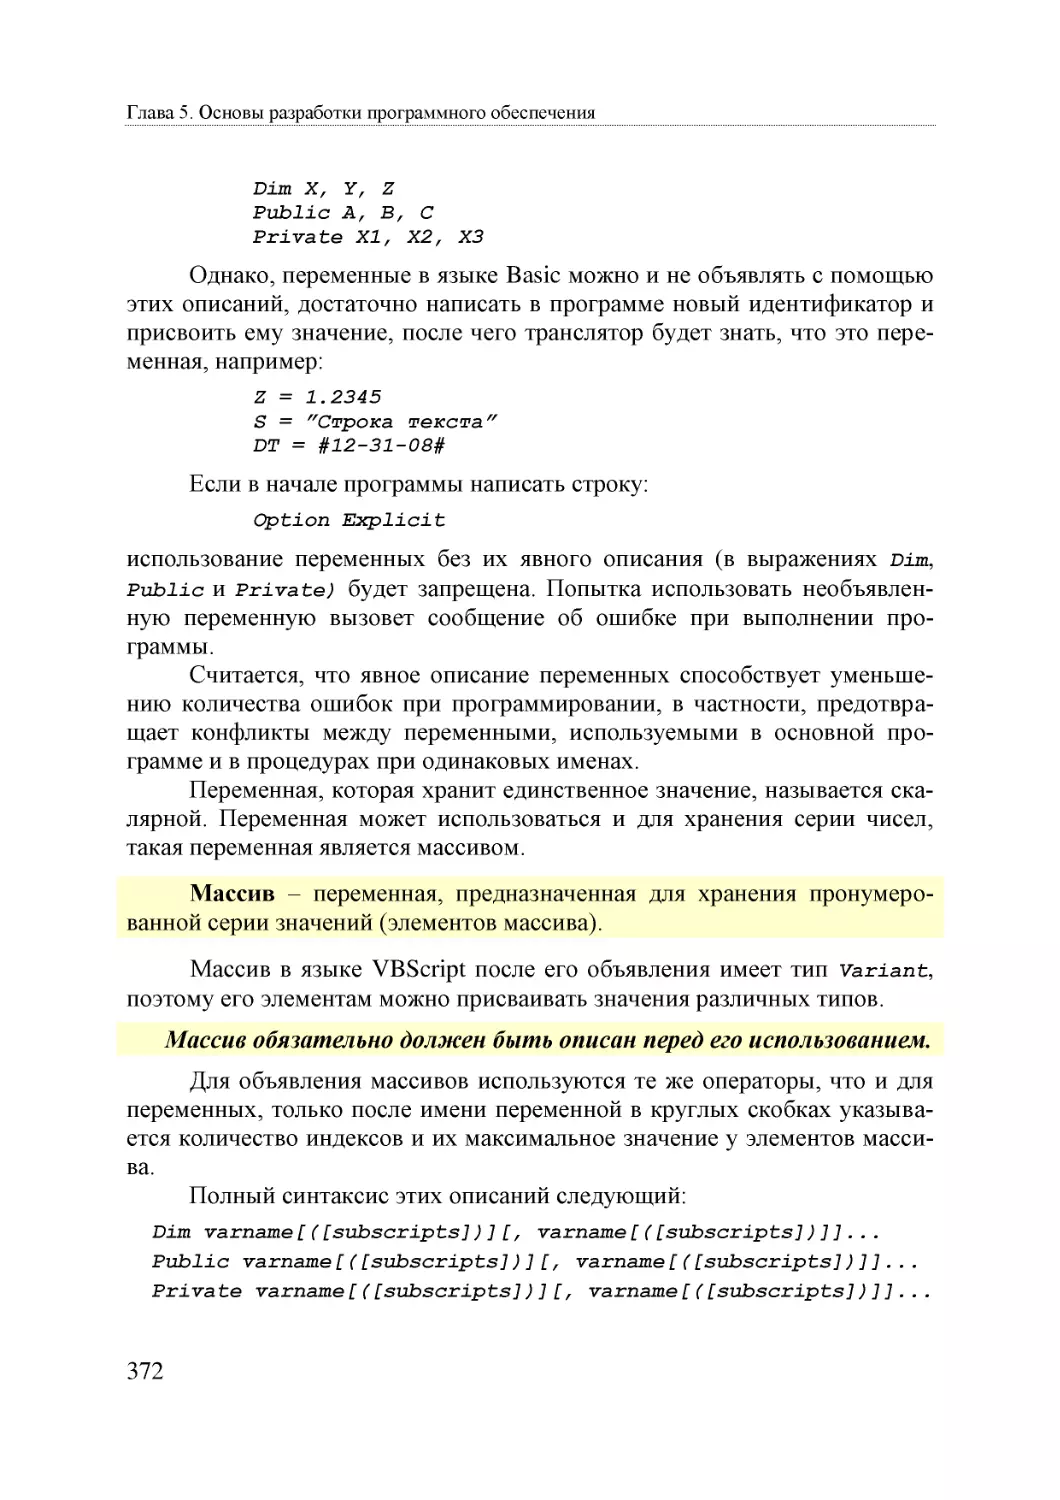 Informatika_Uchebnik_dlya_vuzov_2010 372